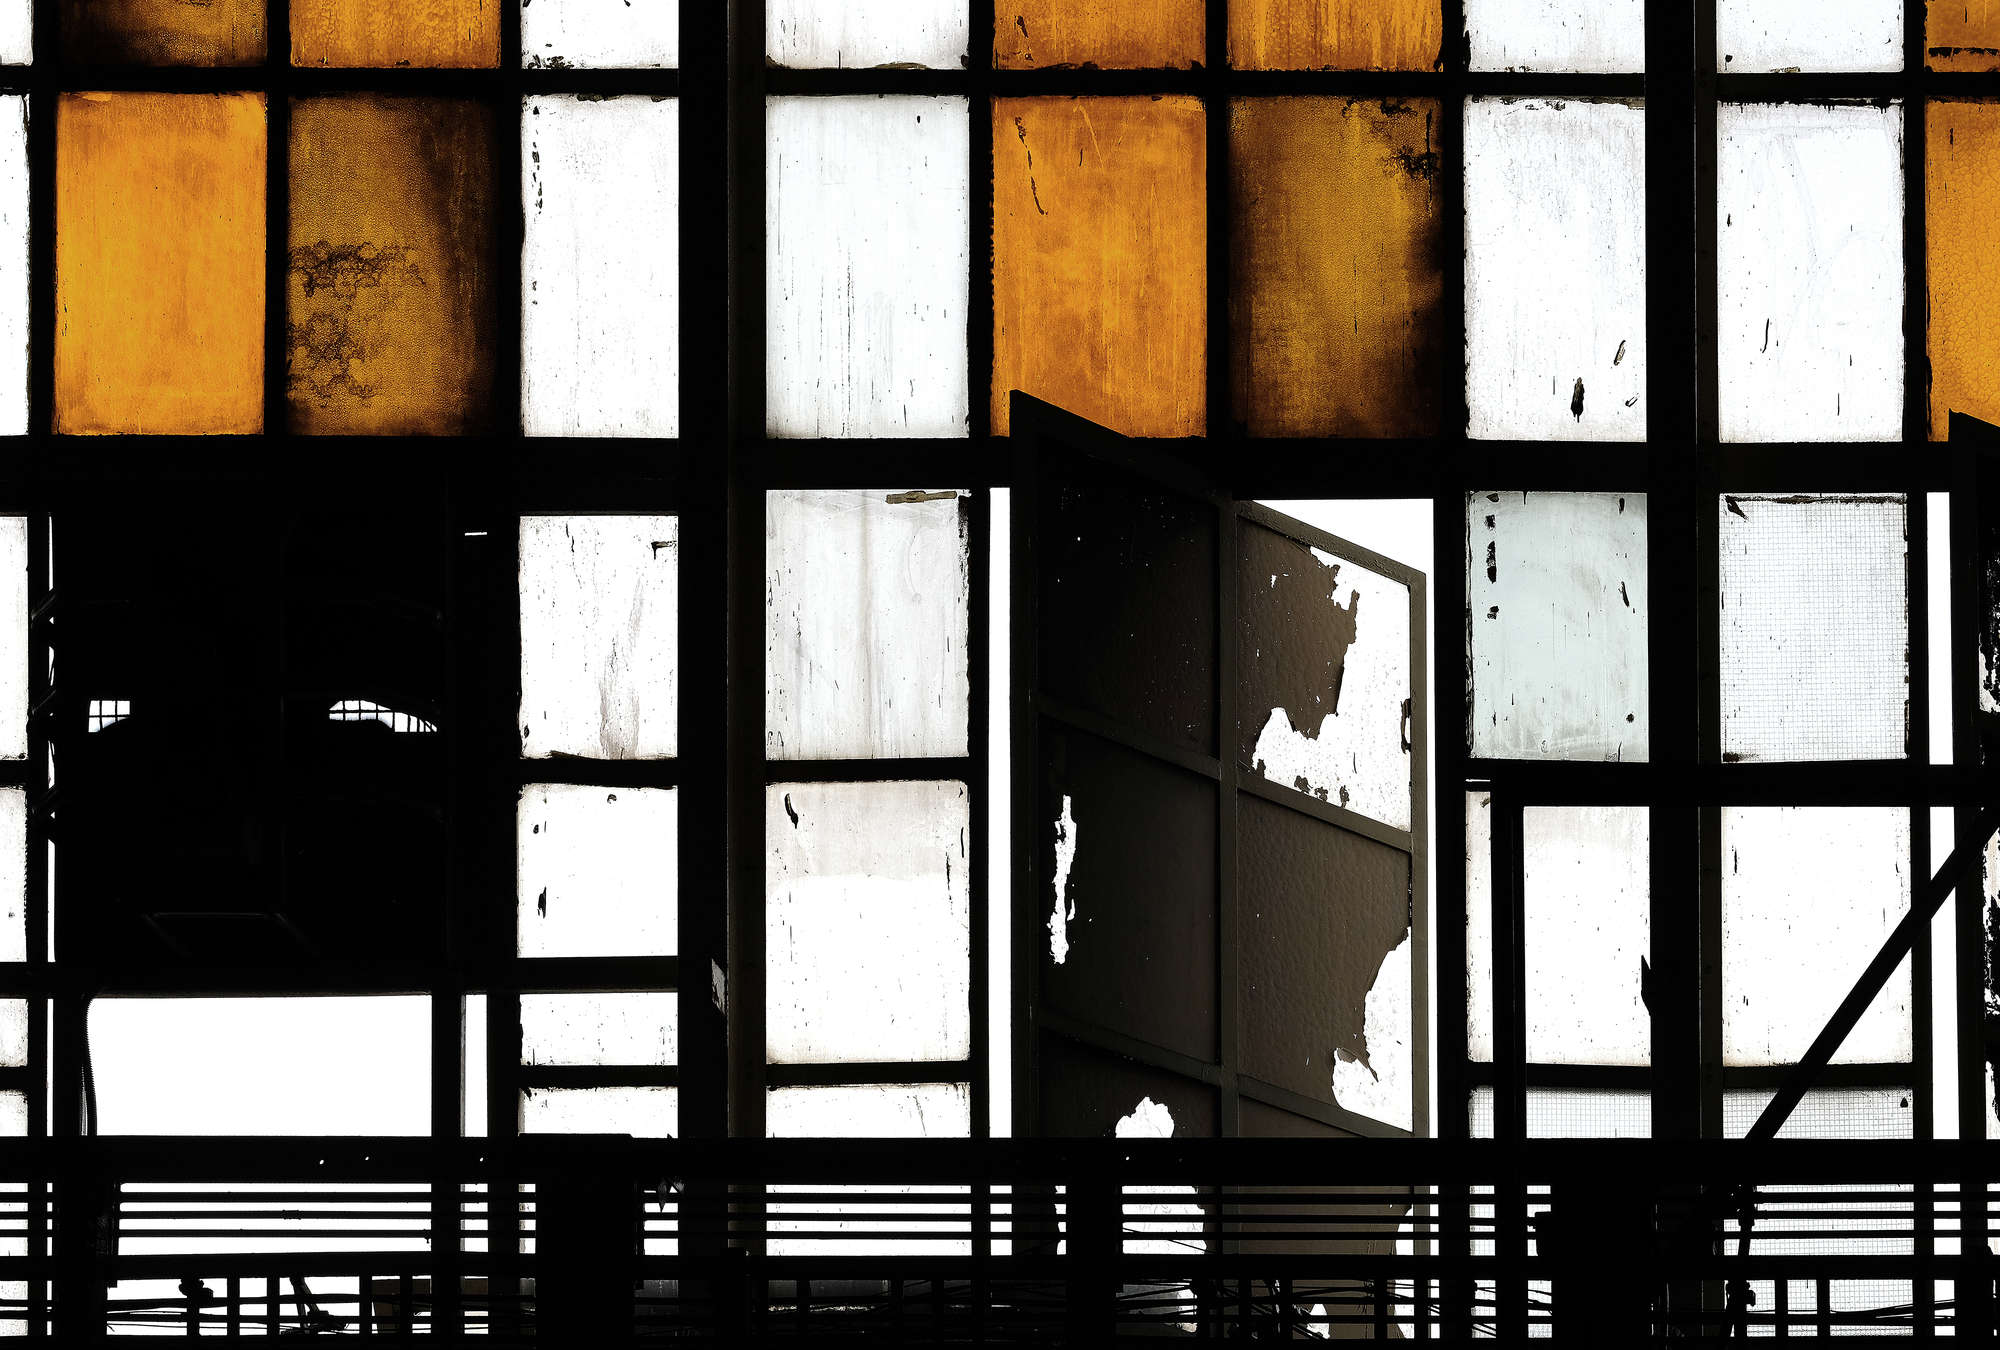             Bronx 2 - Digital behang, Loft met glas in lood ramen - Oranje, Zwart | Pearl glad vlies
        